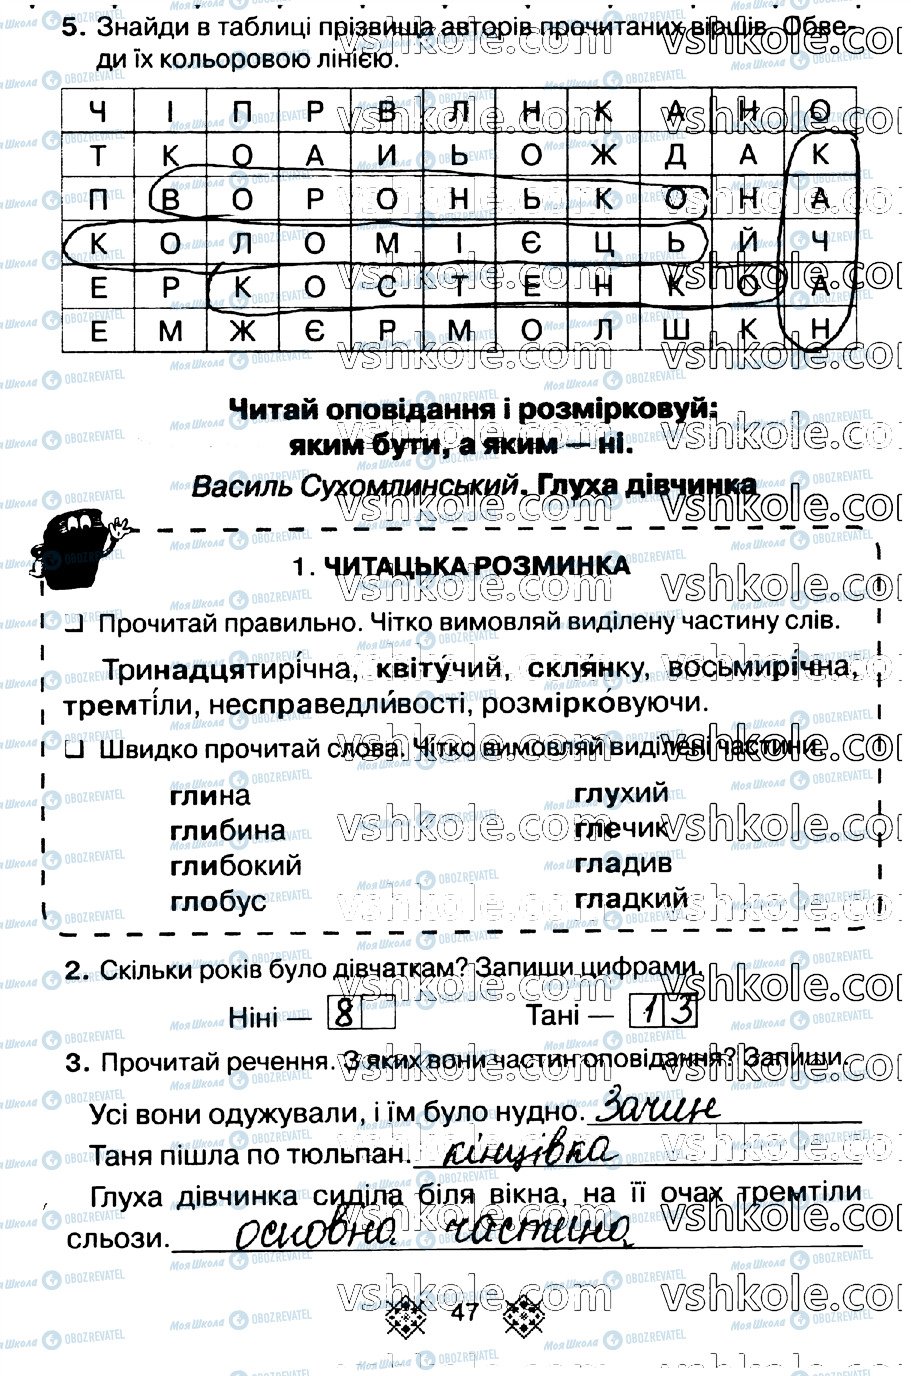 ГДЗ Укр мова 2 класс страница стр47